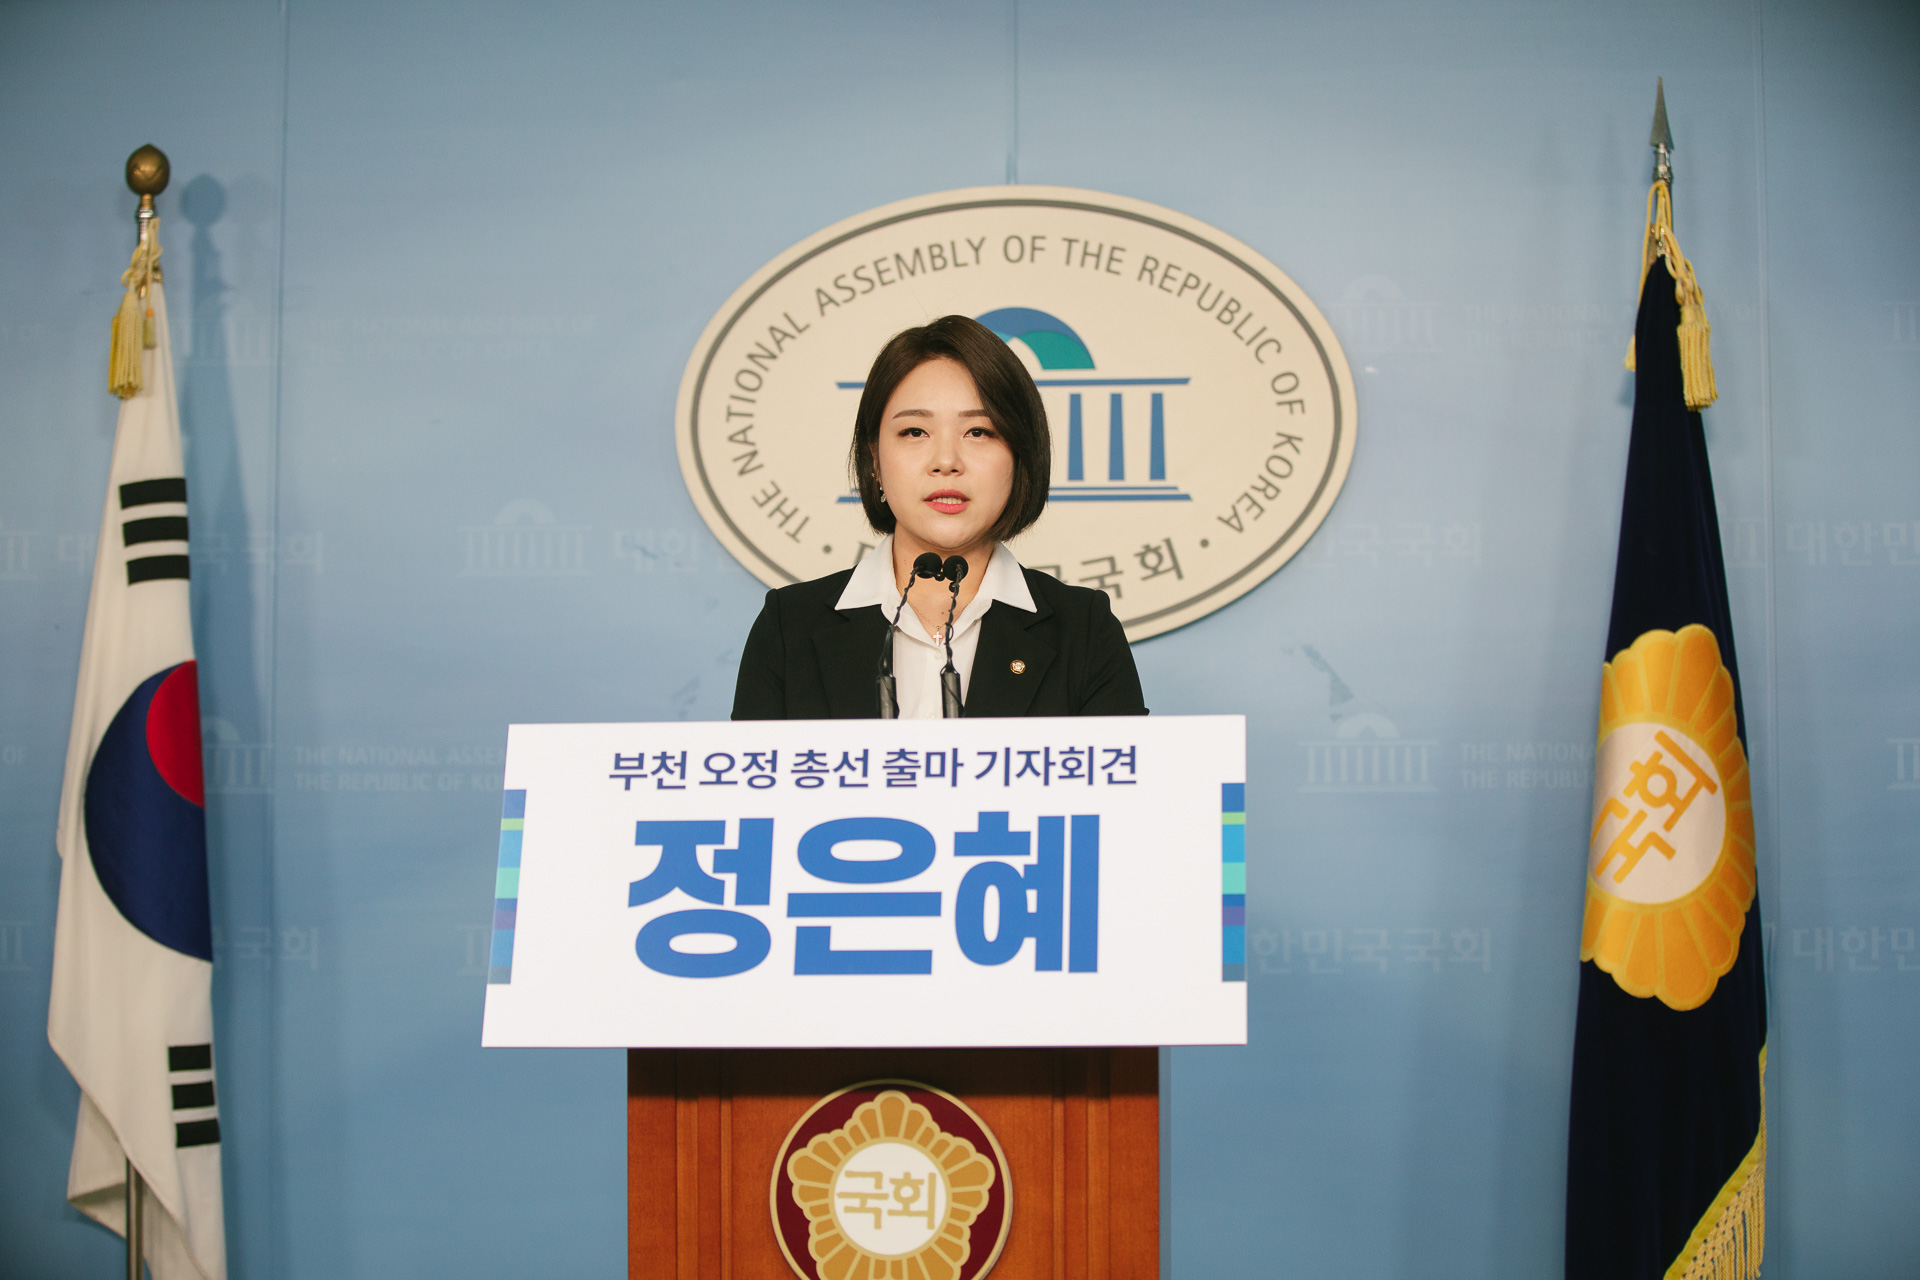 정은혜 의원이 21대총선 부천오정 예비후보 출마를 선언하고 있다.